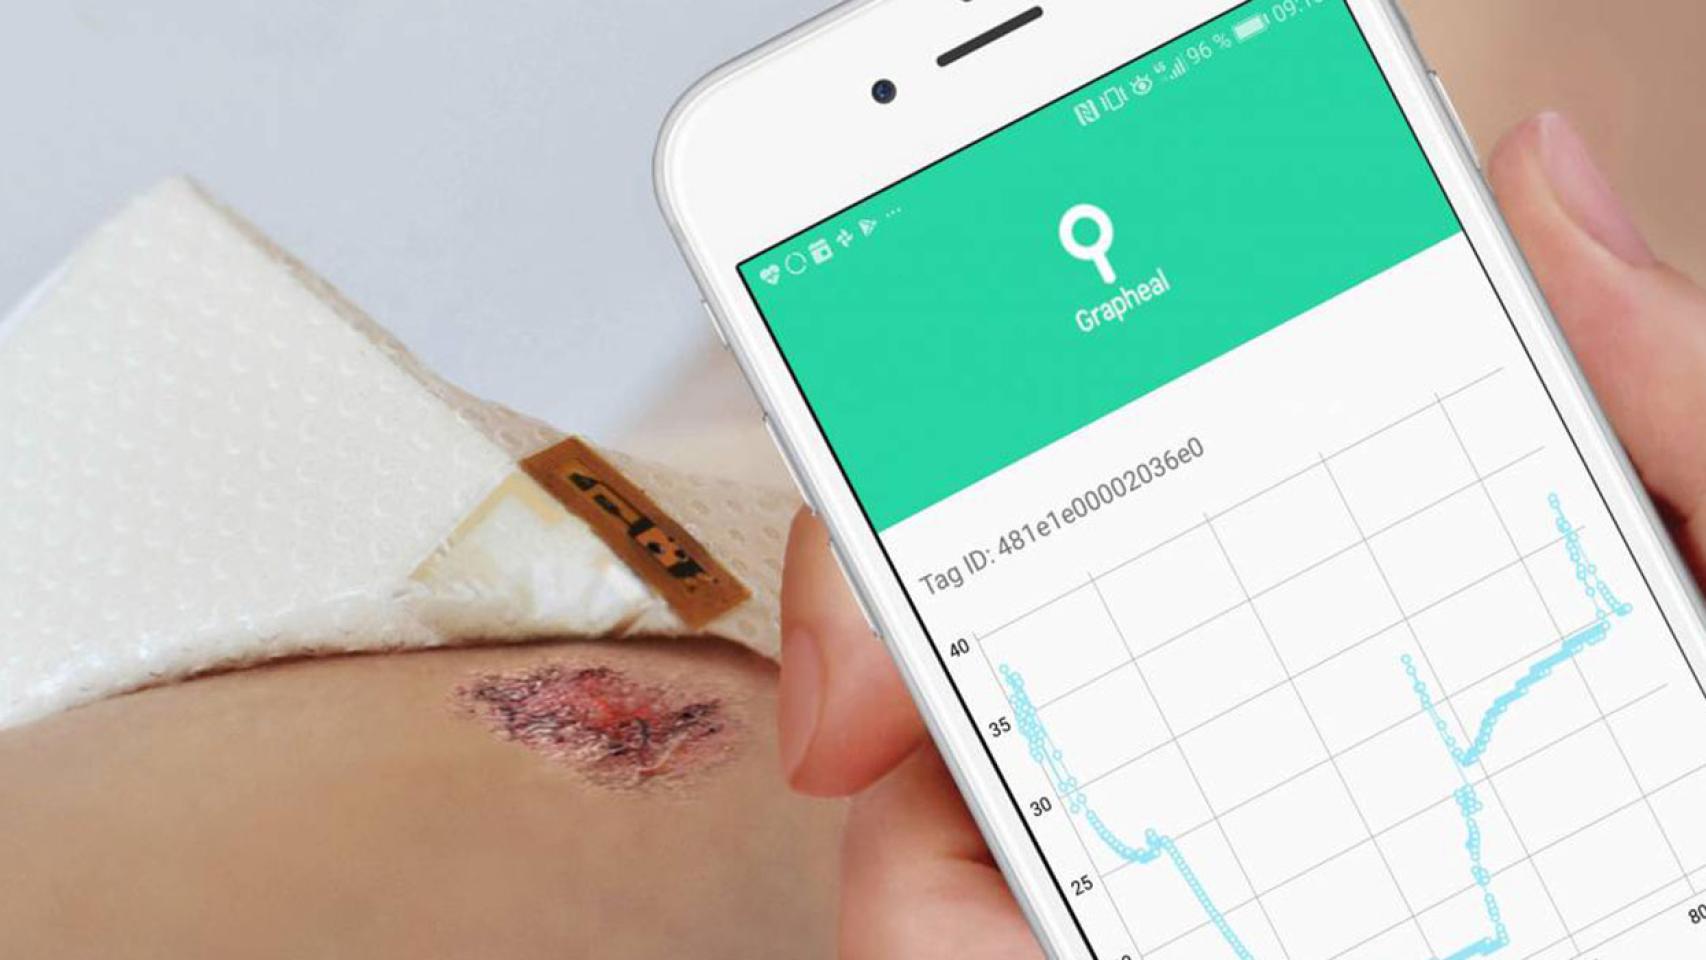 Los datos de la herida recogidos por el parche de grafeno se envían al hospital a través del móvil.